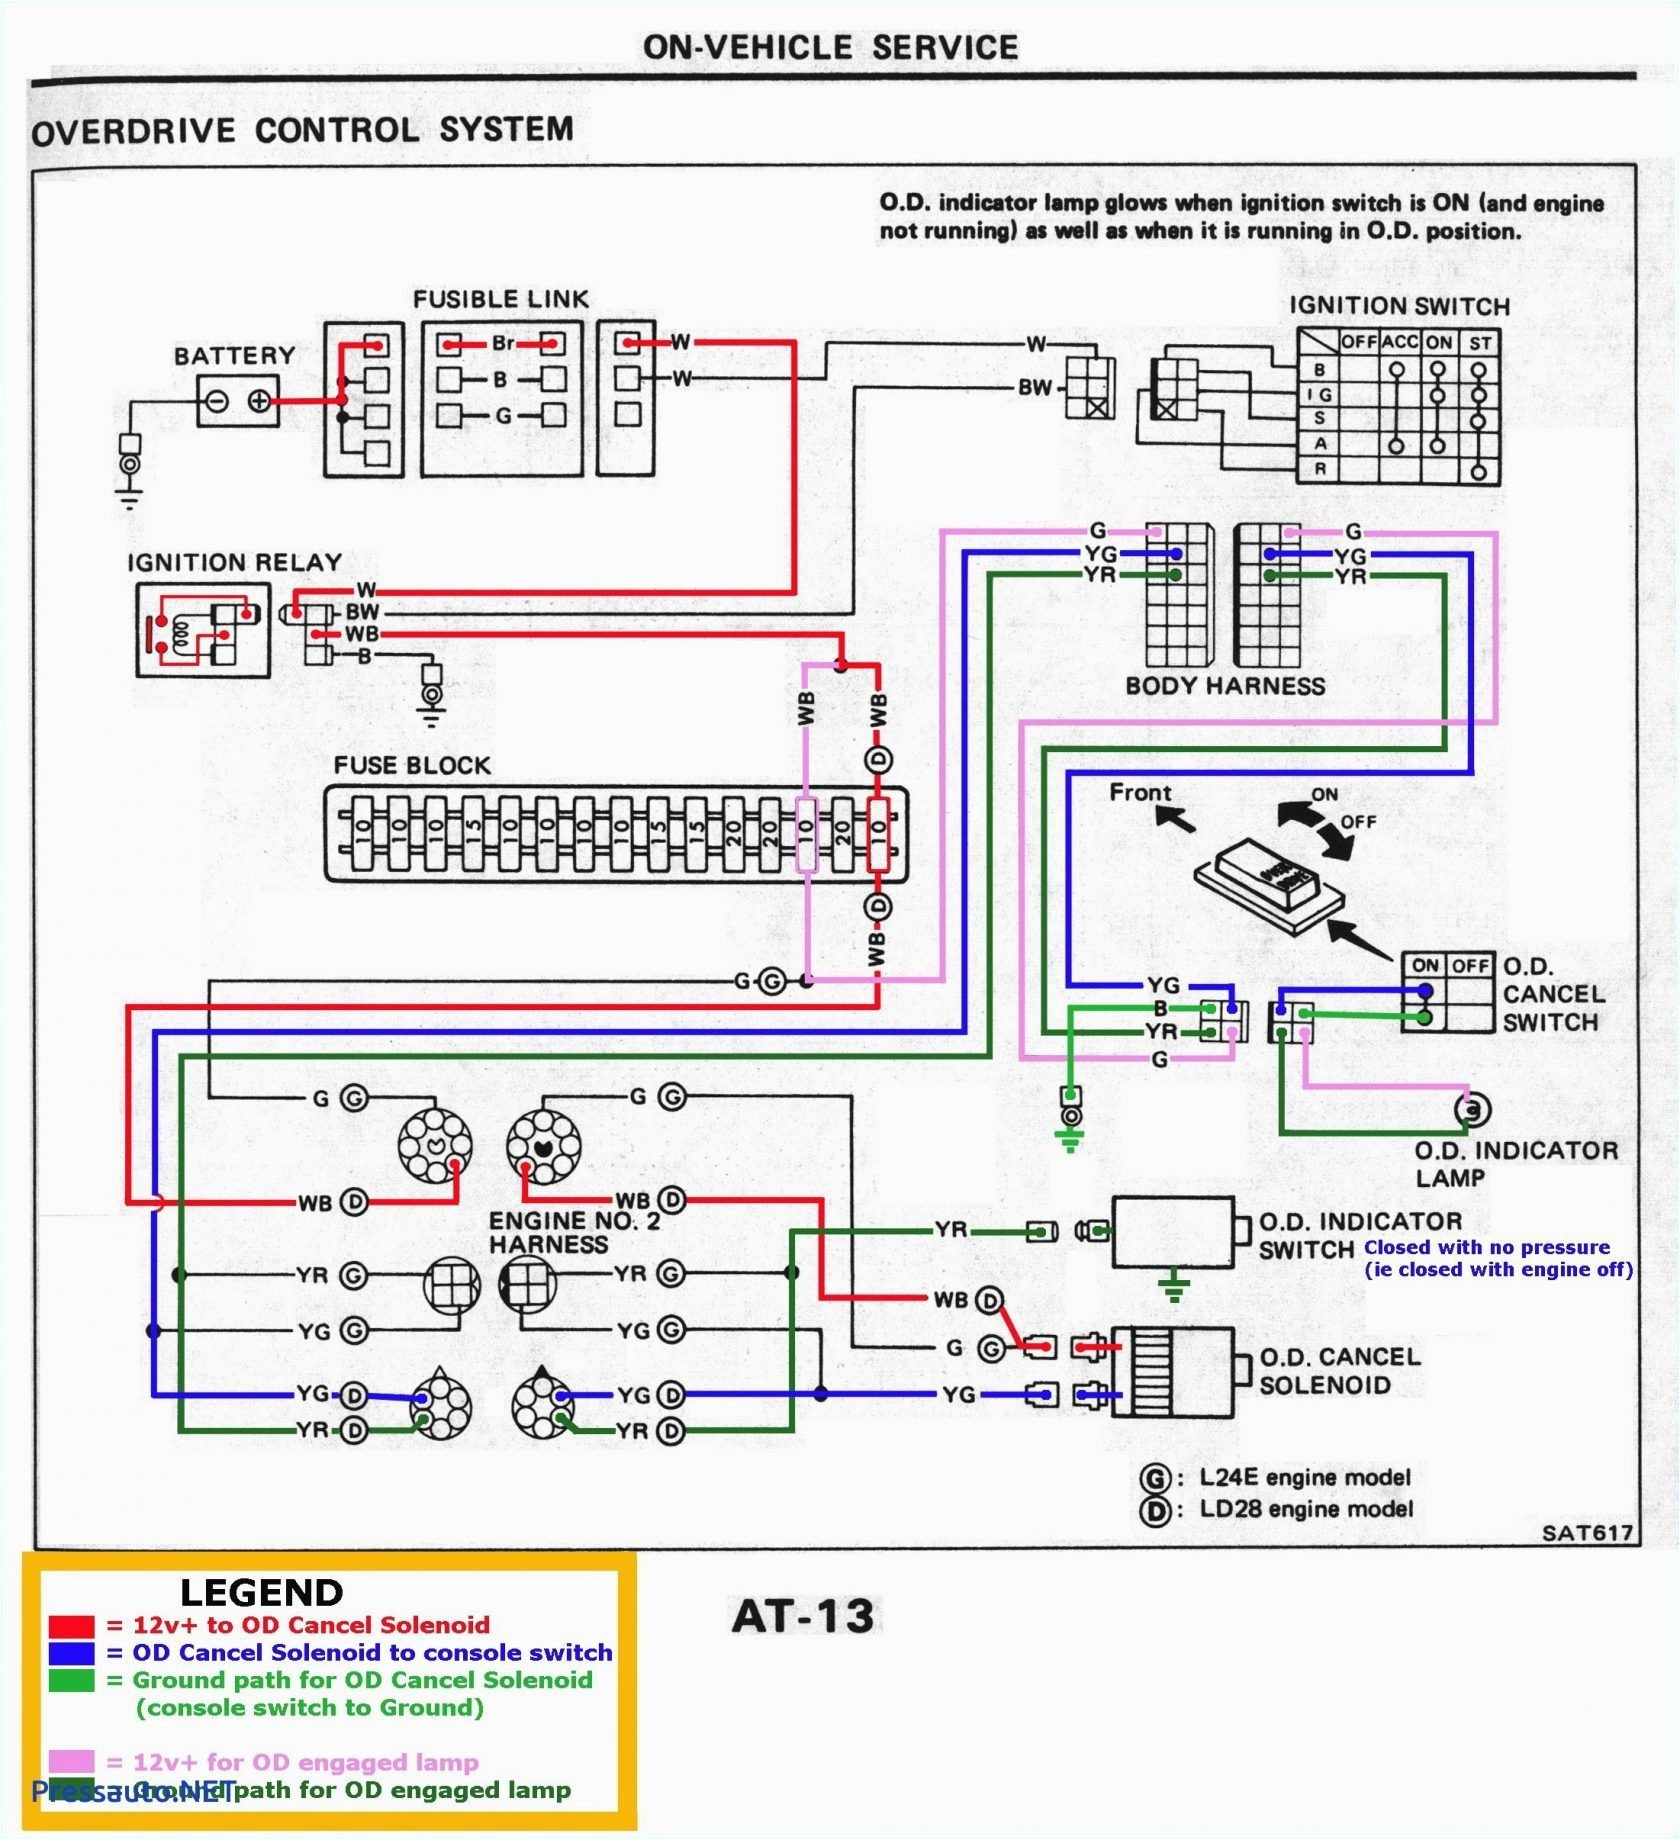 Kazuma Jaguar 500 Wiring Diagram 01 Chevy Wiring Schematic Wiring Diagram